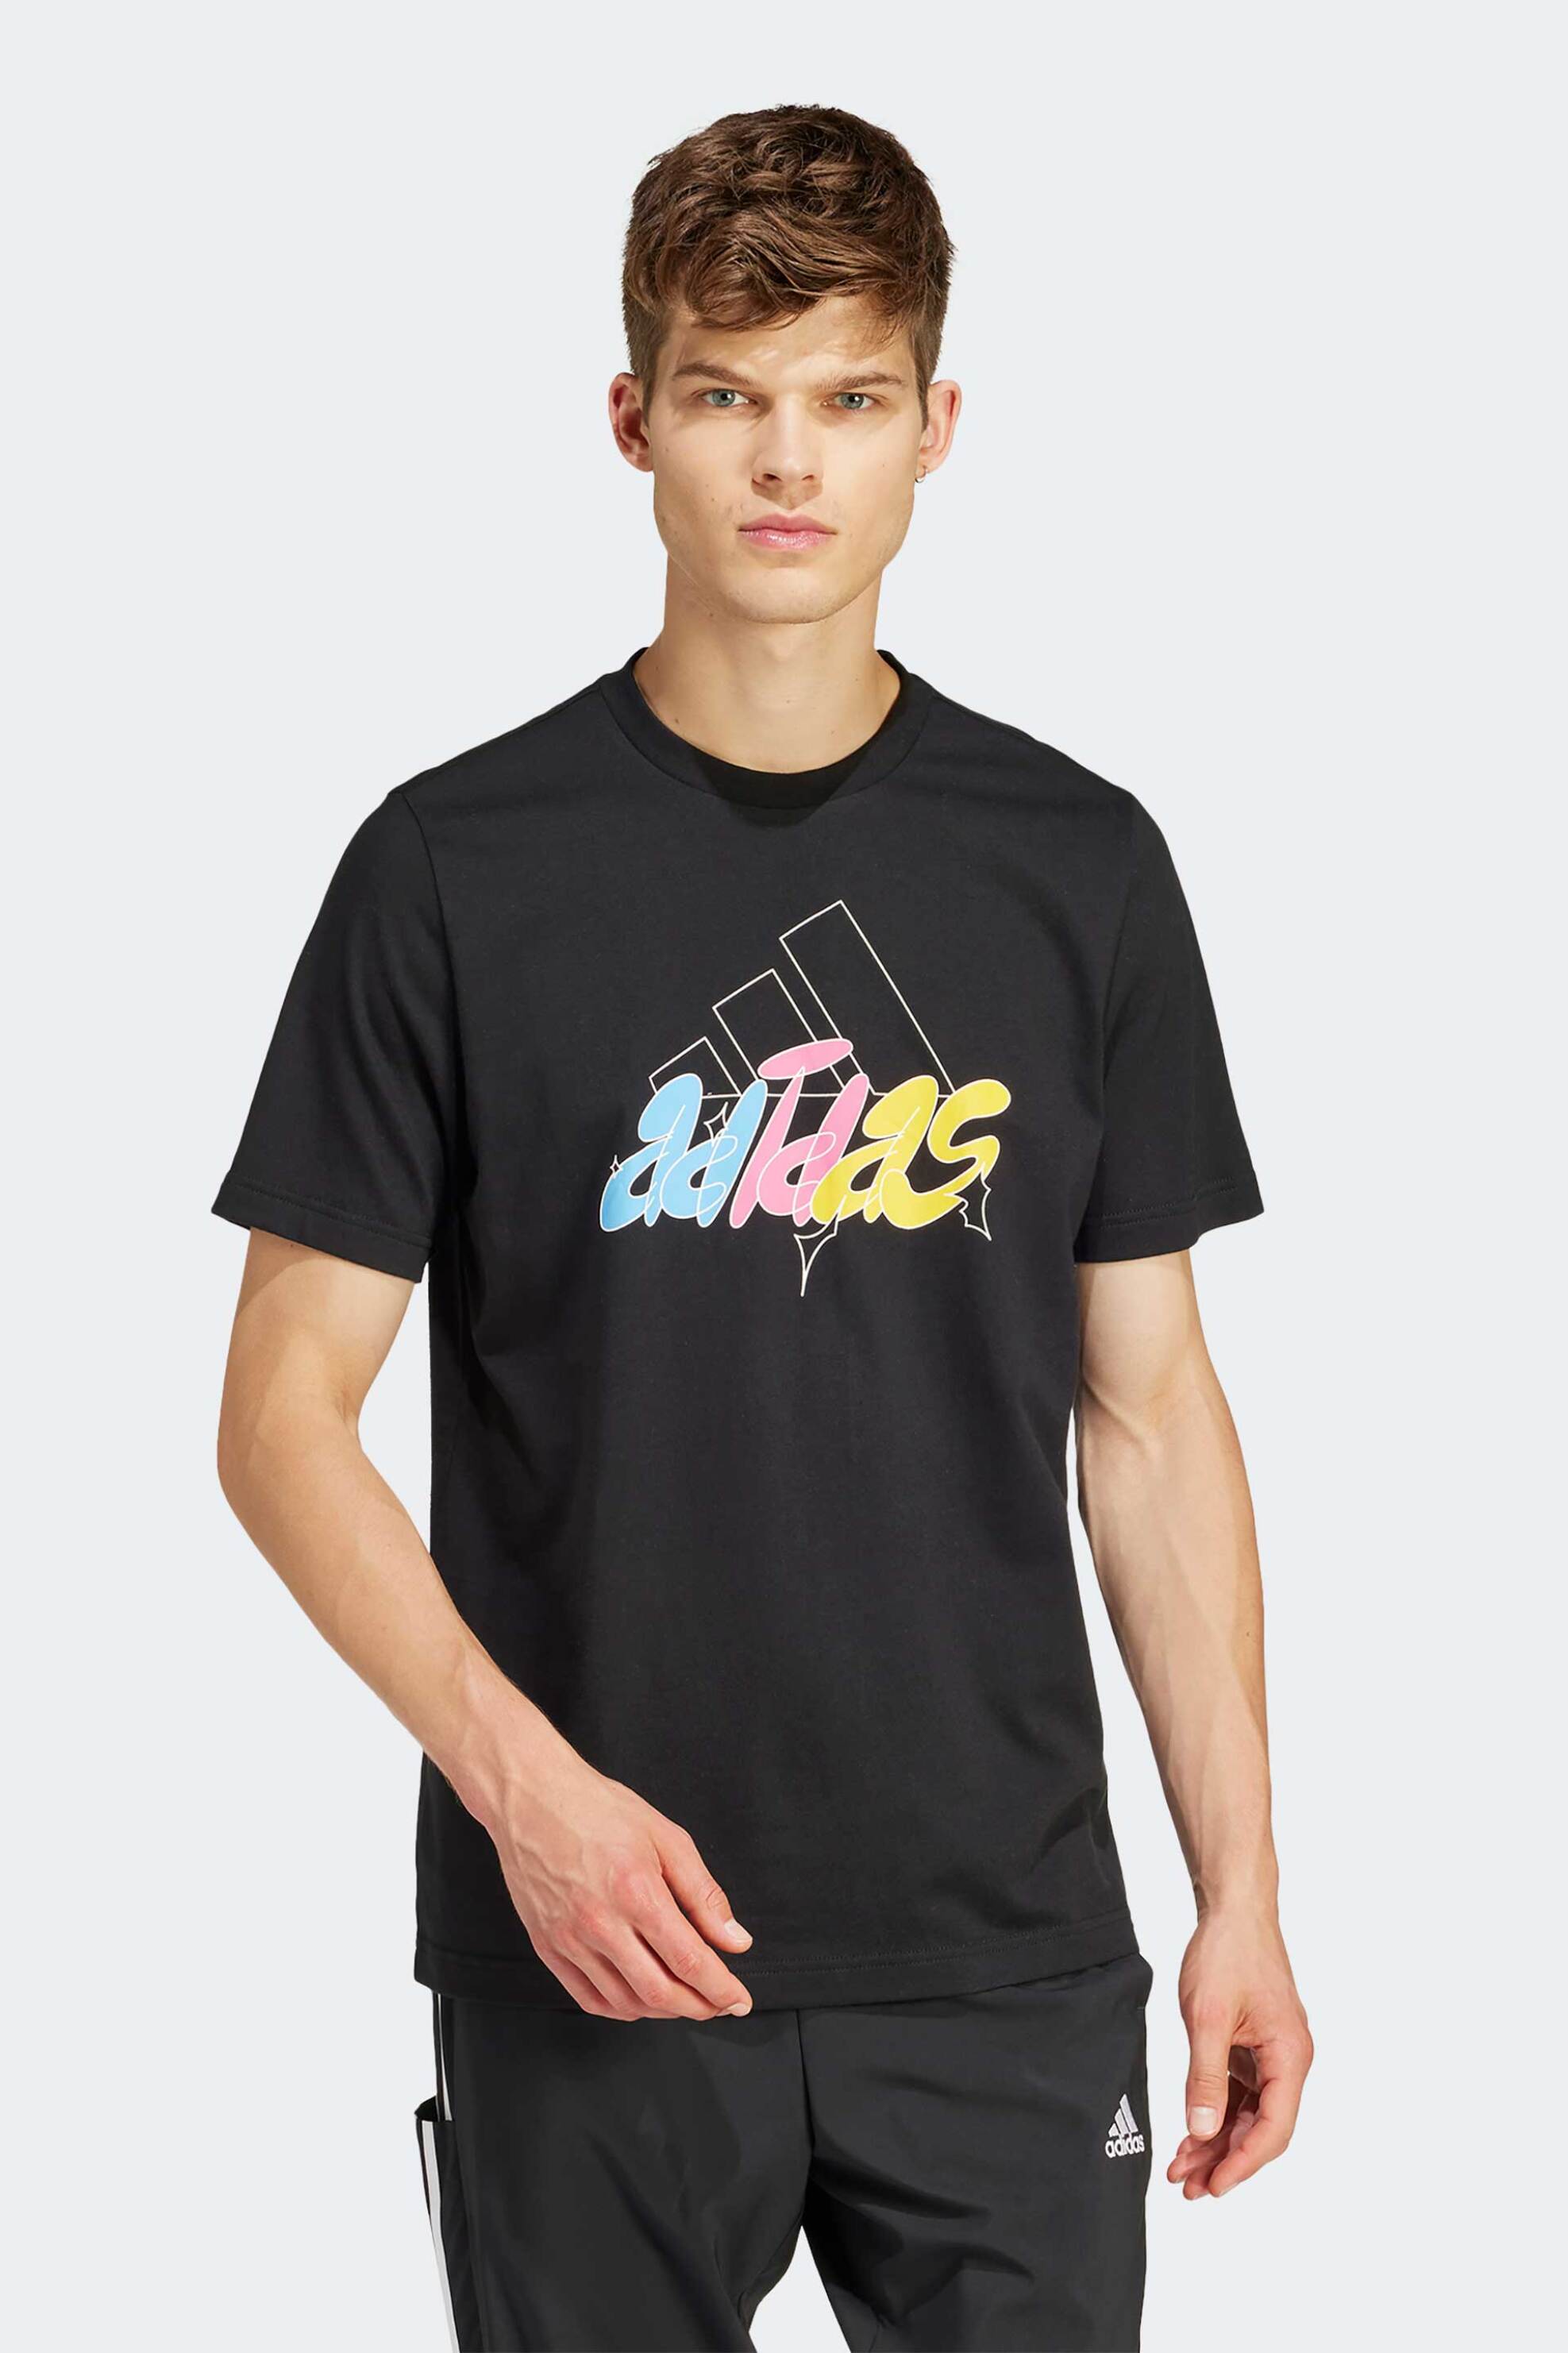 Ανδρική Μόδα > Ανδρικά Αθλητικά > Ανδρικά Αθλητικά Ρούχα > Αθλητικές Μπλούζες > Ανδρικά Αθλητικά T-Shirts Adidas ανδρικό T-shirt με logo print στο στήθος - IS2864 Μαύρο